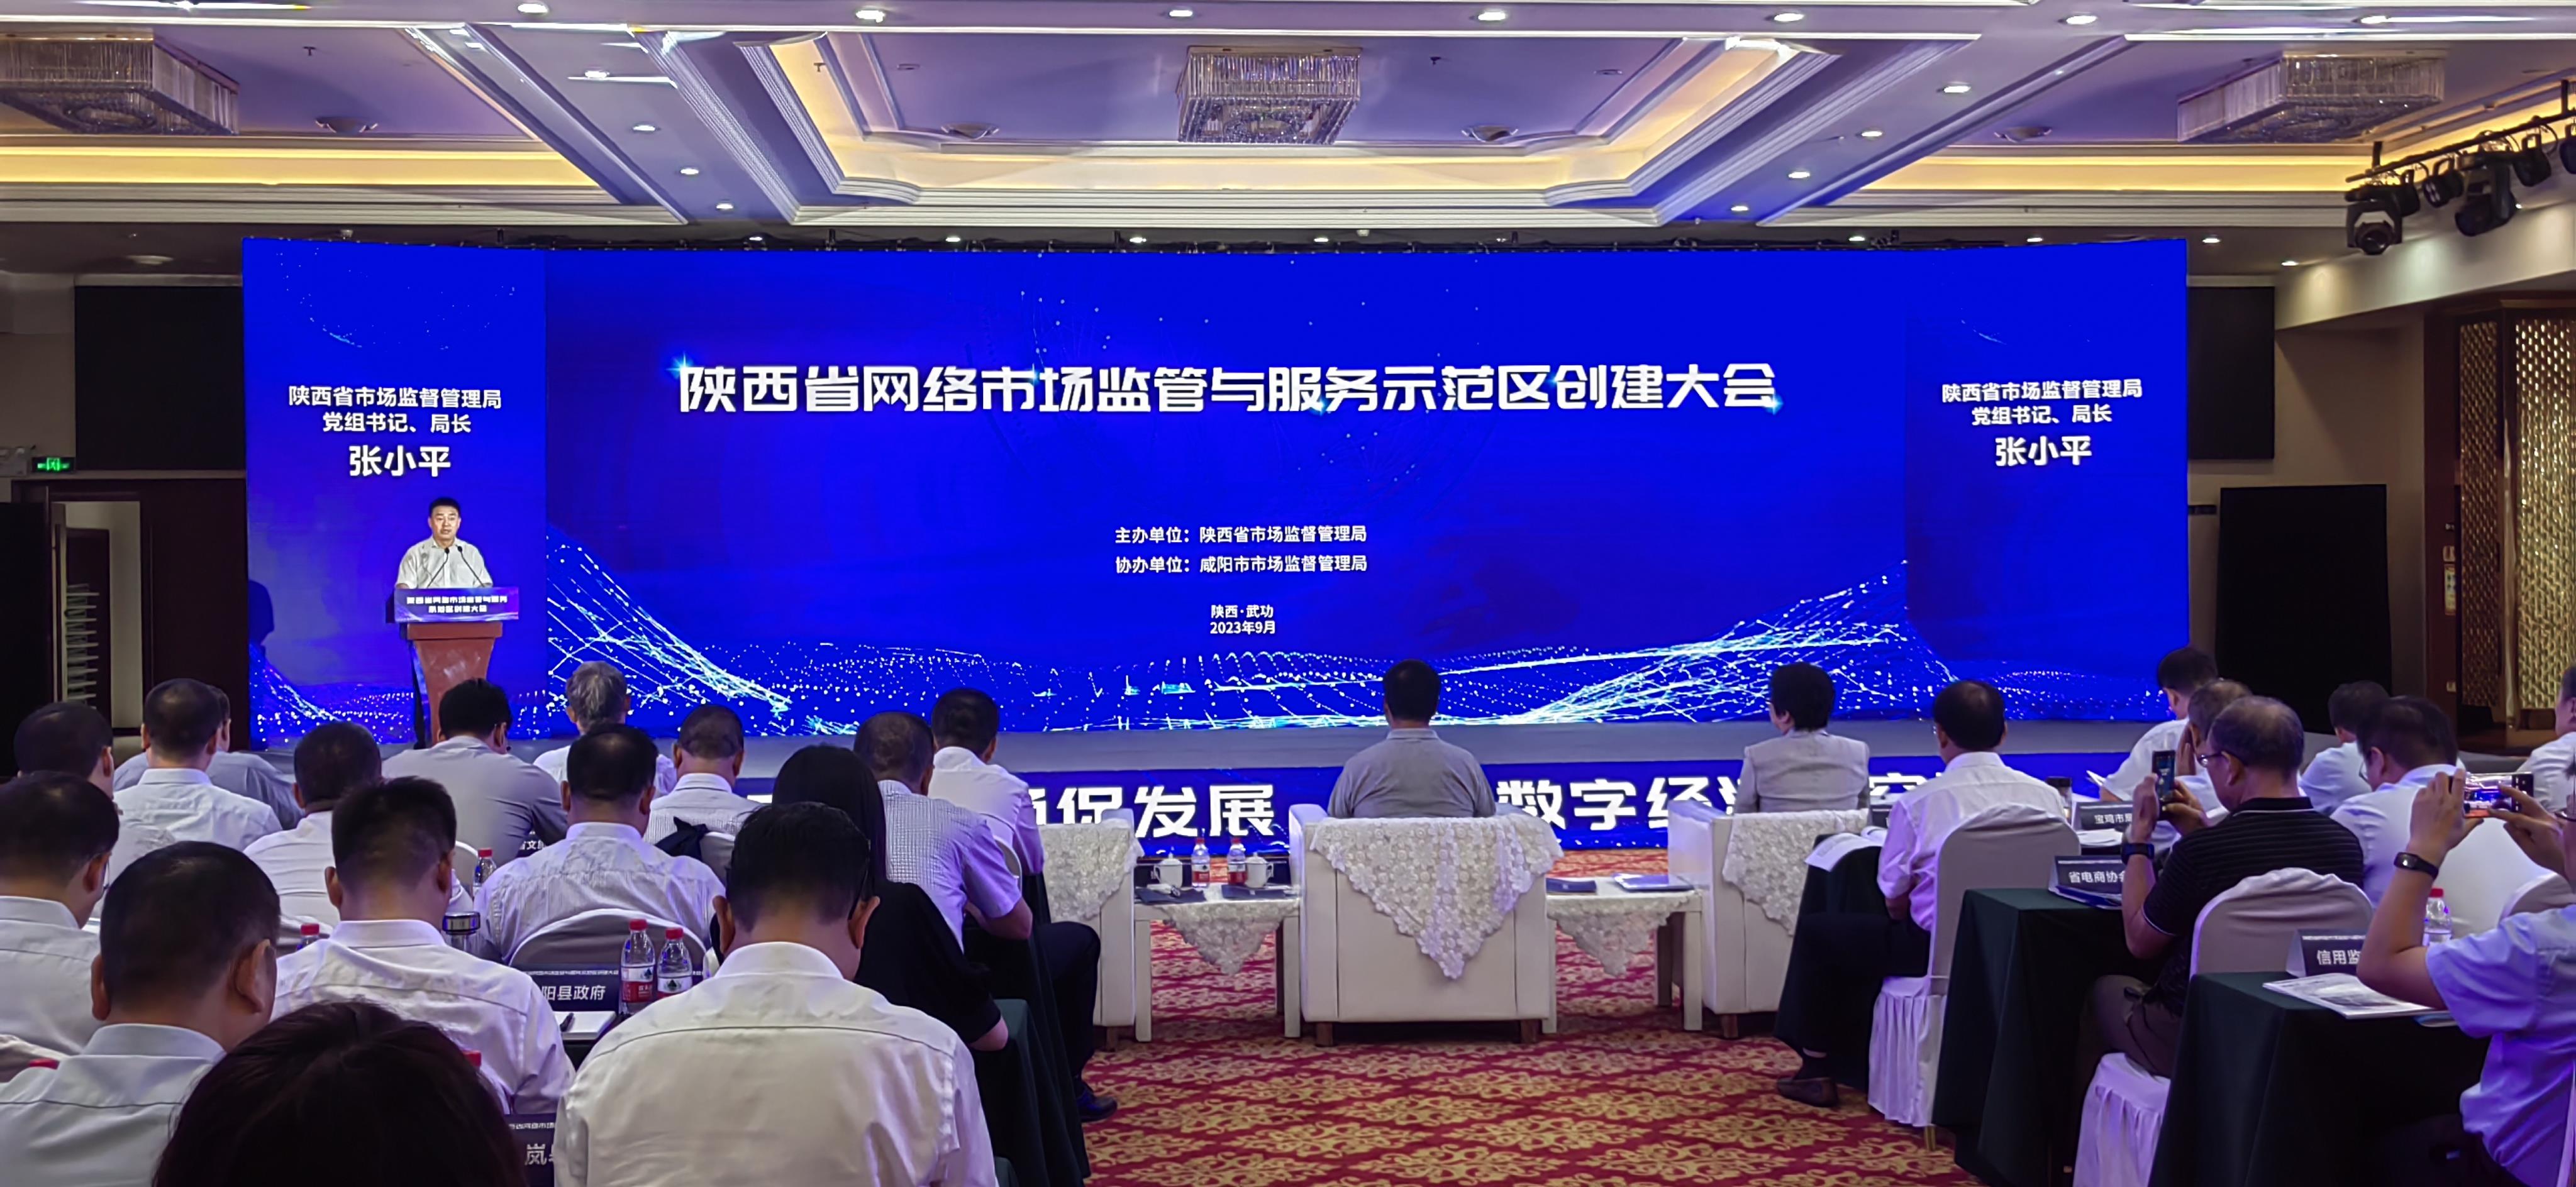 陕西公布首批创建网络市场监管与服务示范区名单